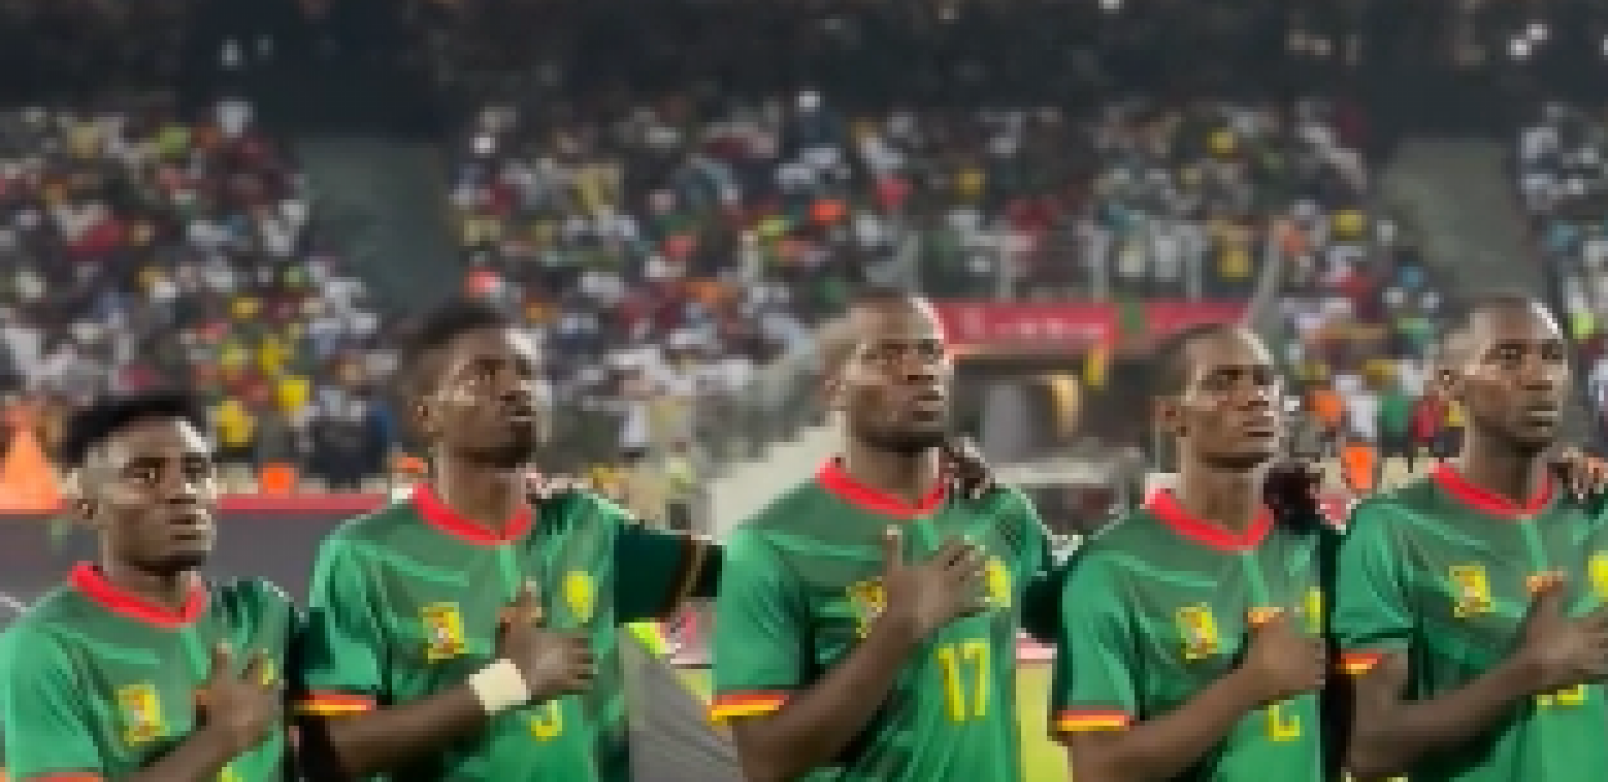 ORLOVI, ČUVAJTE SE Udarna snaga Kameruna, za dva minuta na terenu dao gol, velika pretnja Srbiji